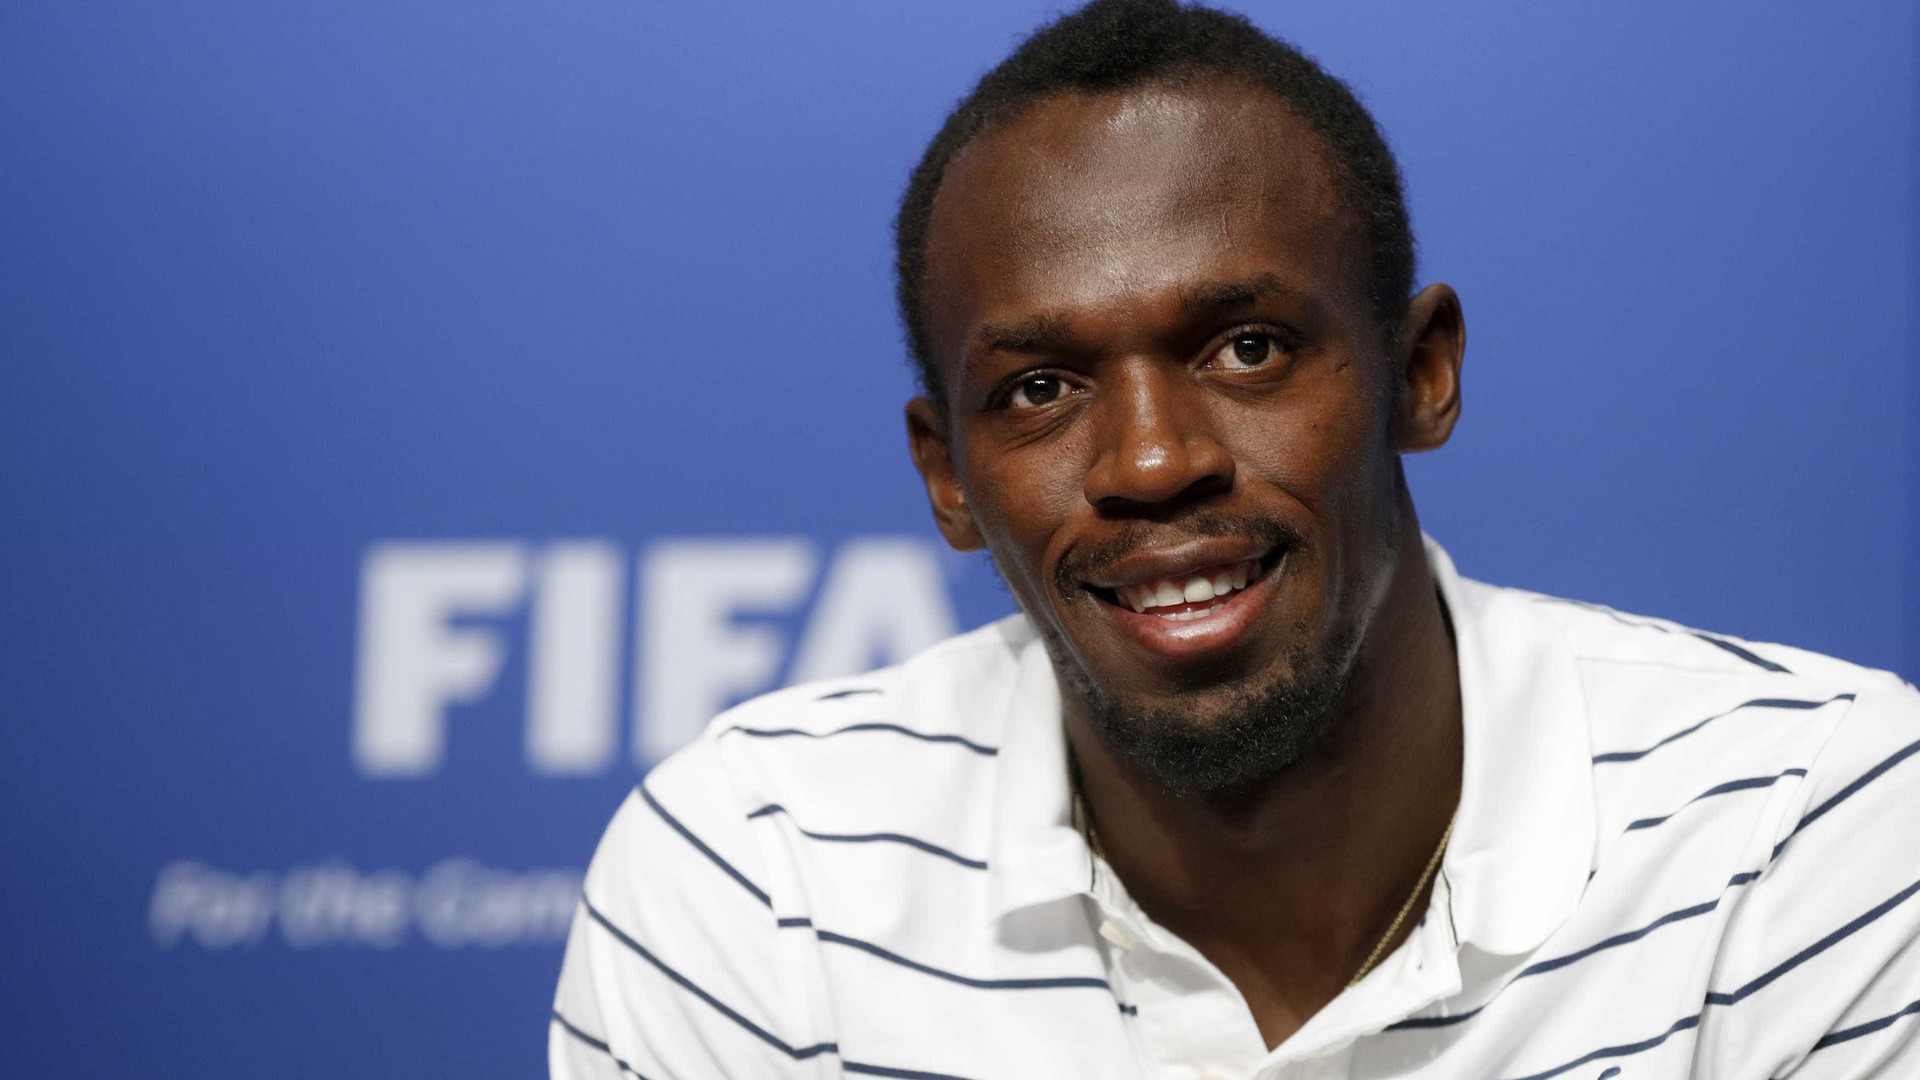 Após marcar 2 gols, Usain Bolt fica surpreso com exame antidoping